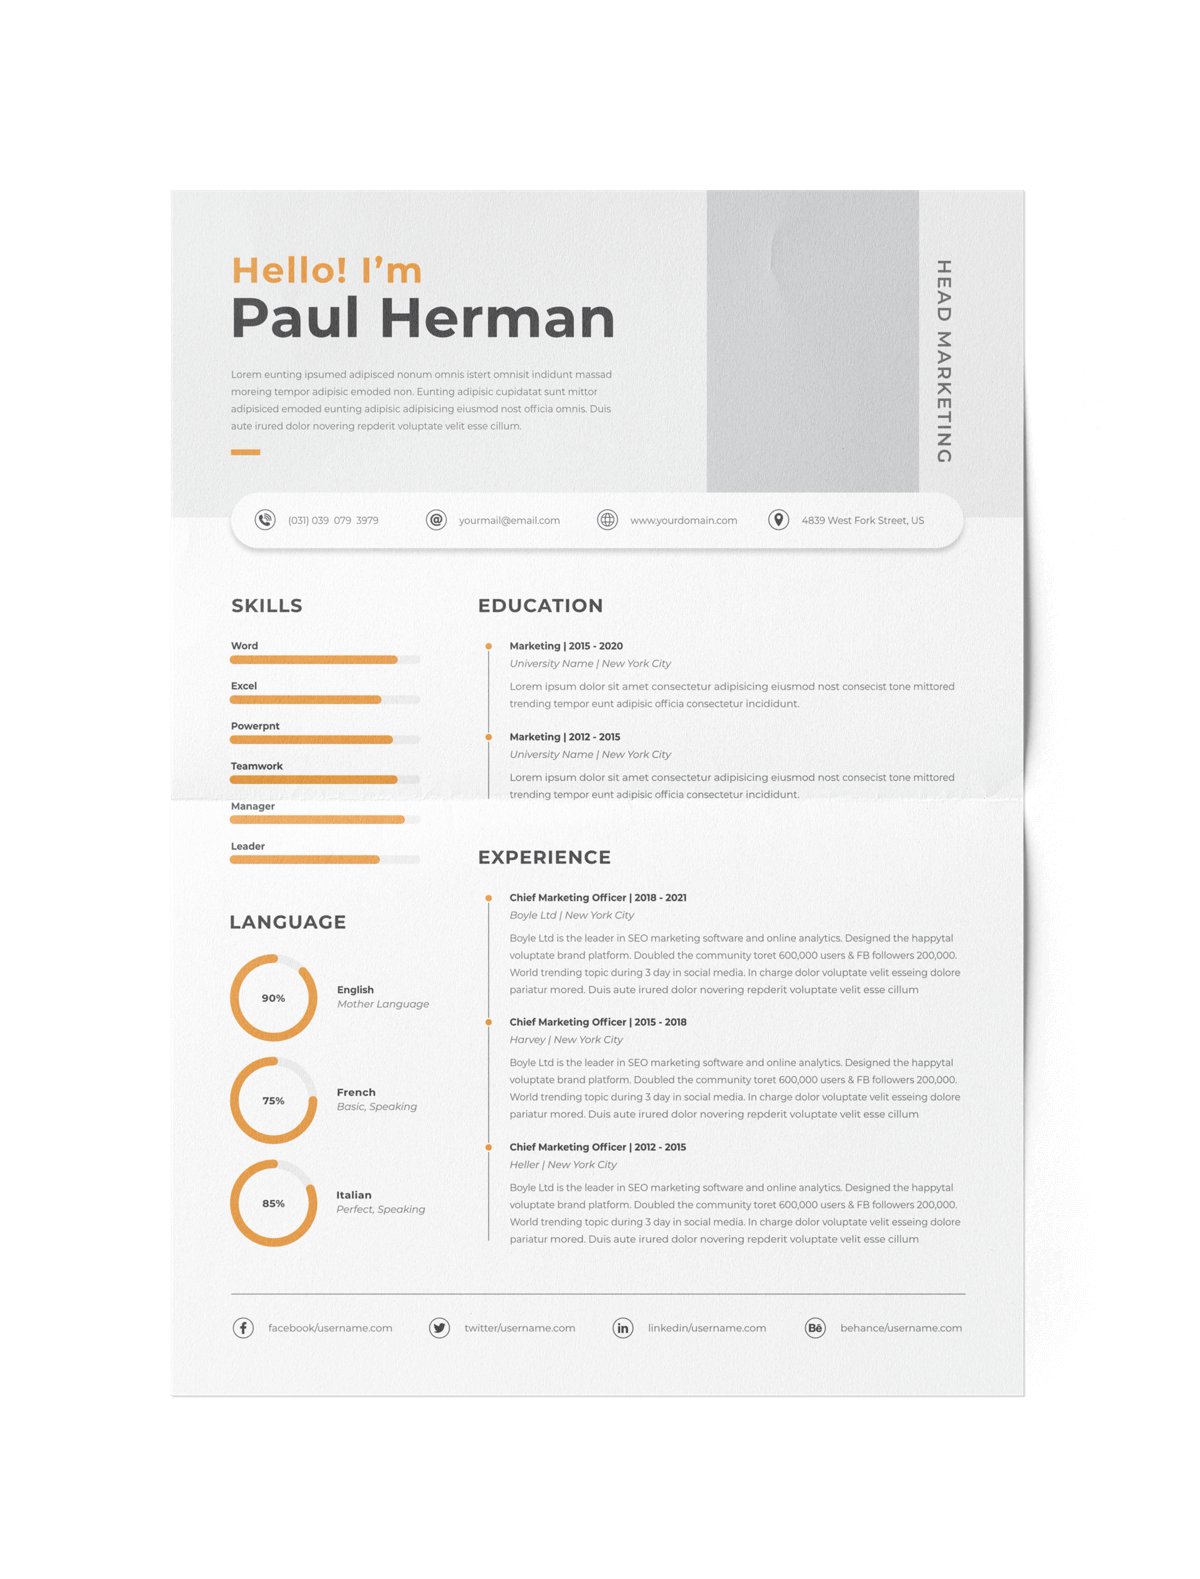 CV #154 Paul Herman